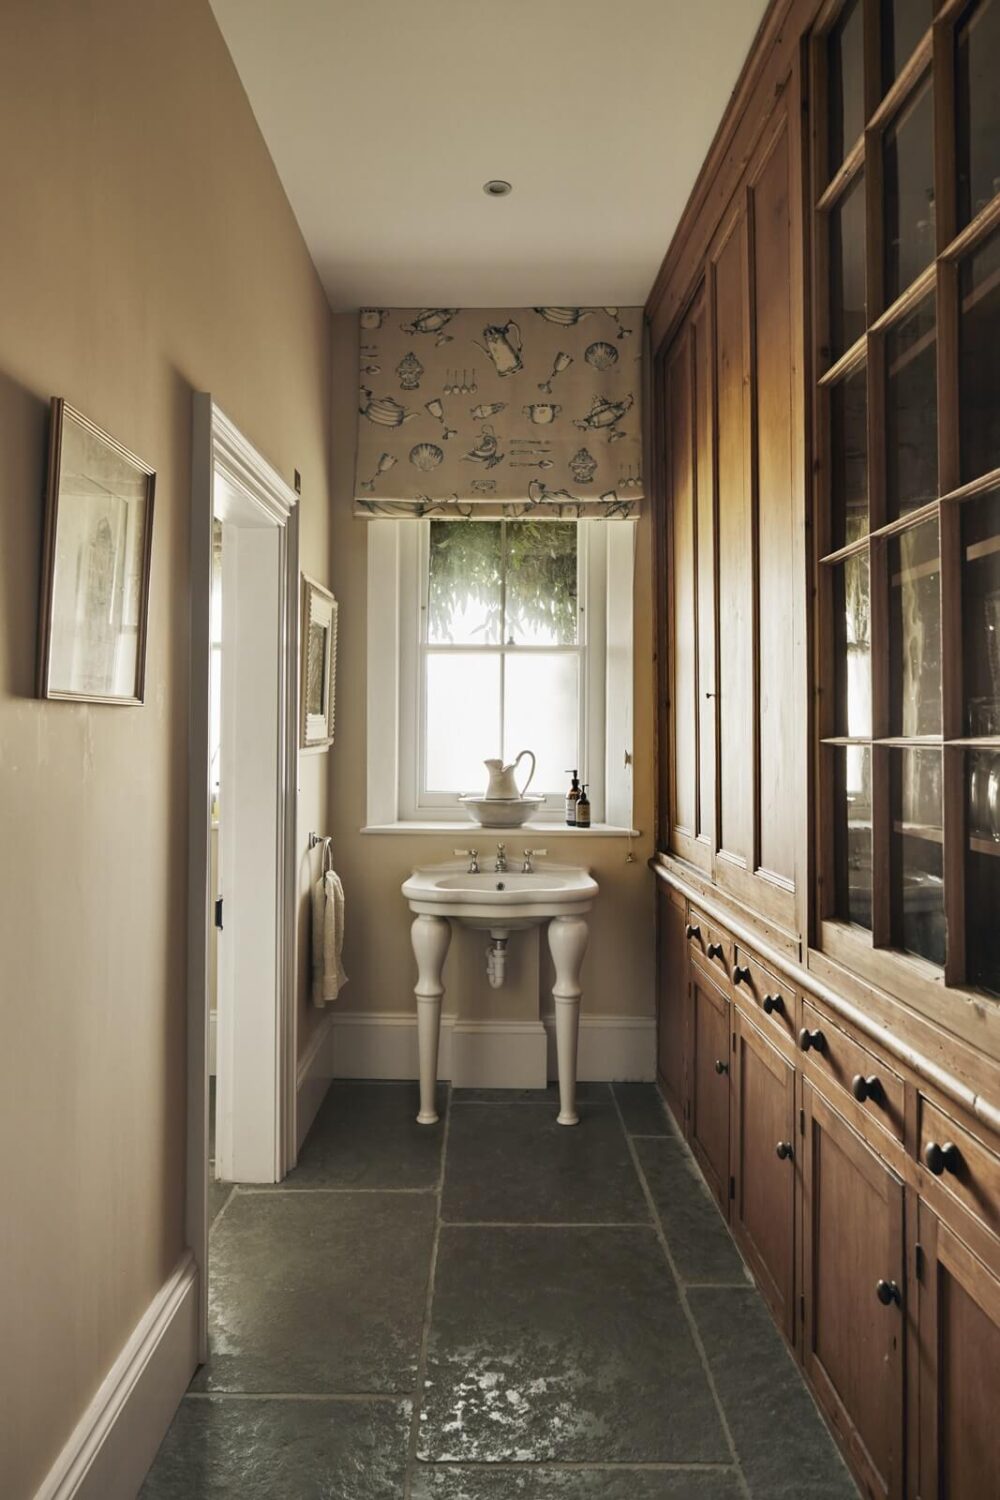 bathroom-sink-stone-floor-built-in-wooden-wardrobe-nordroom